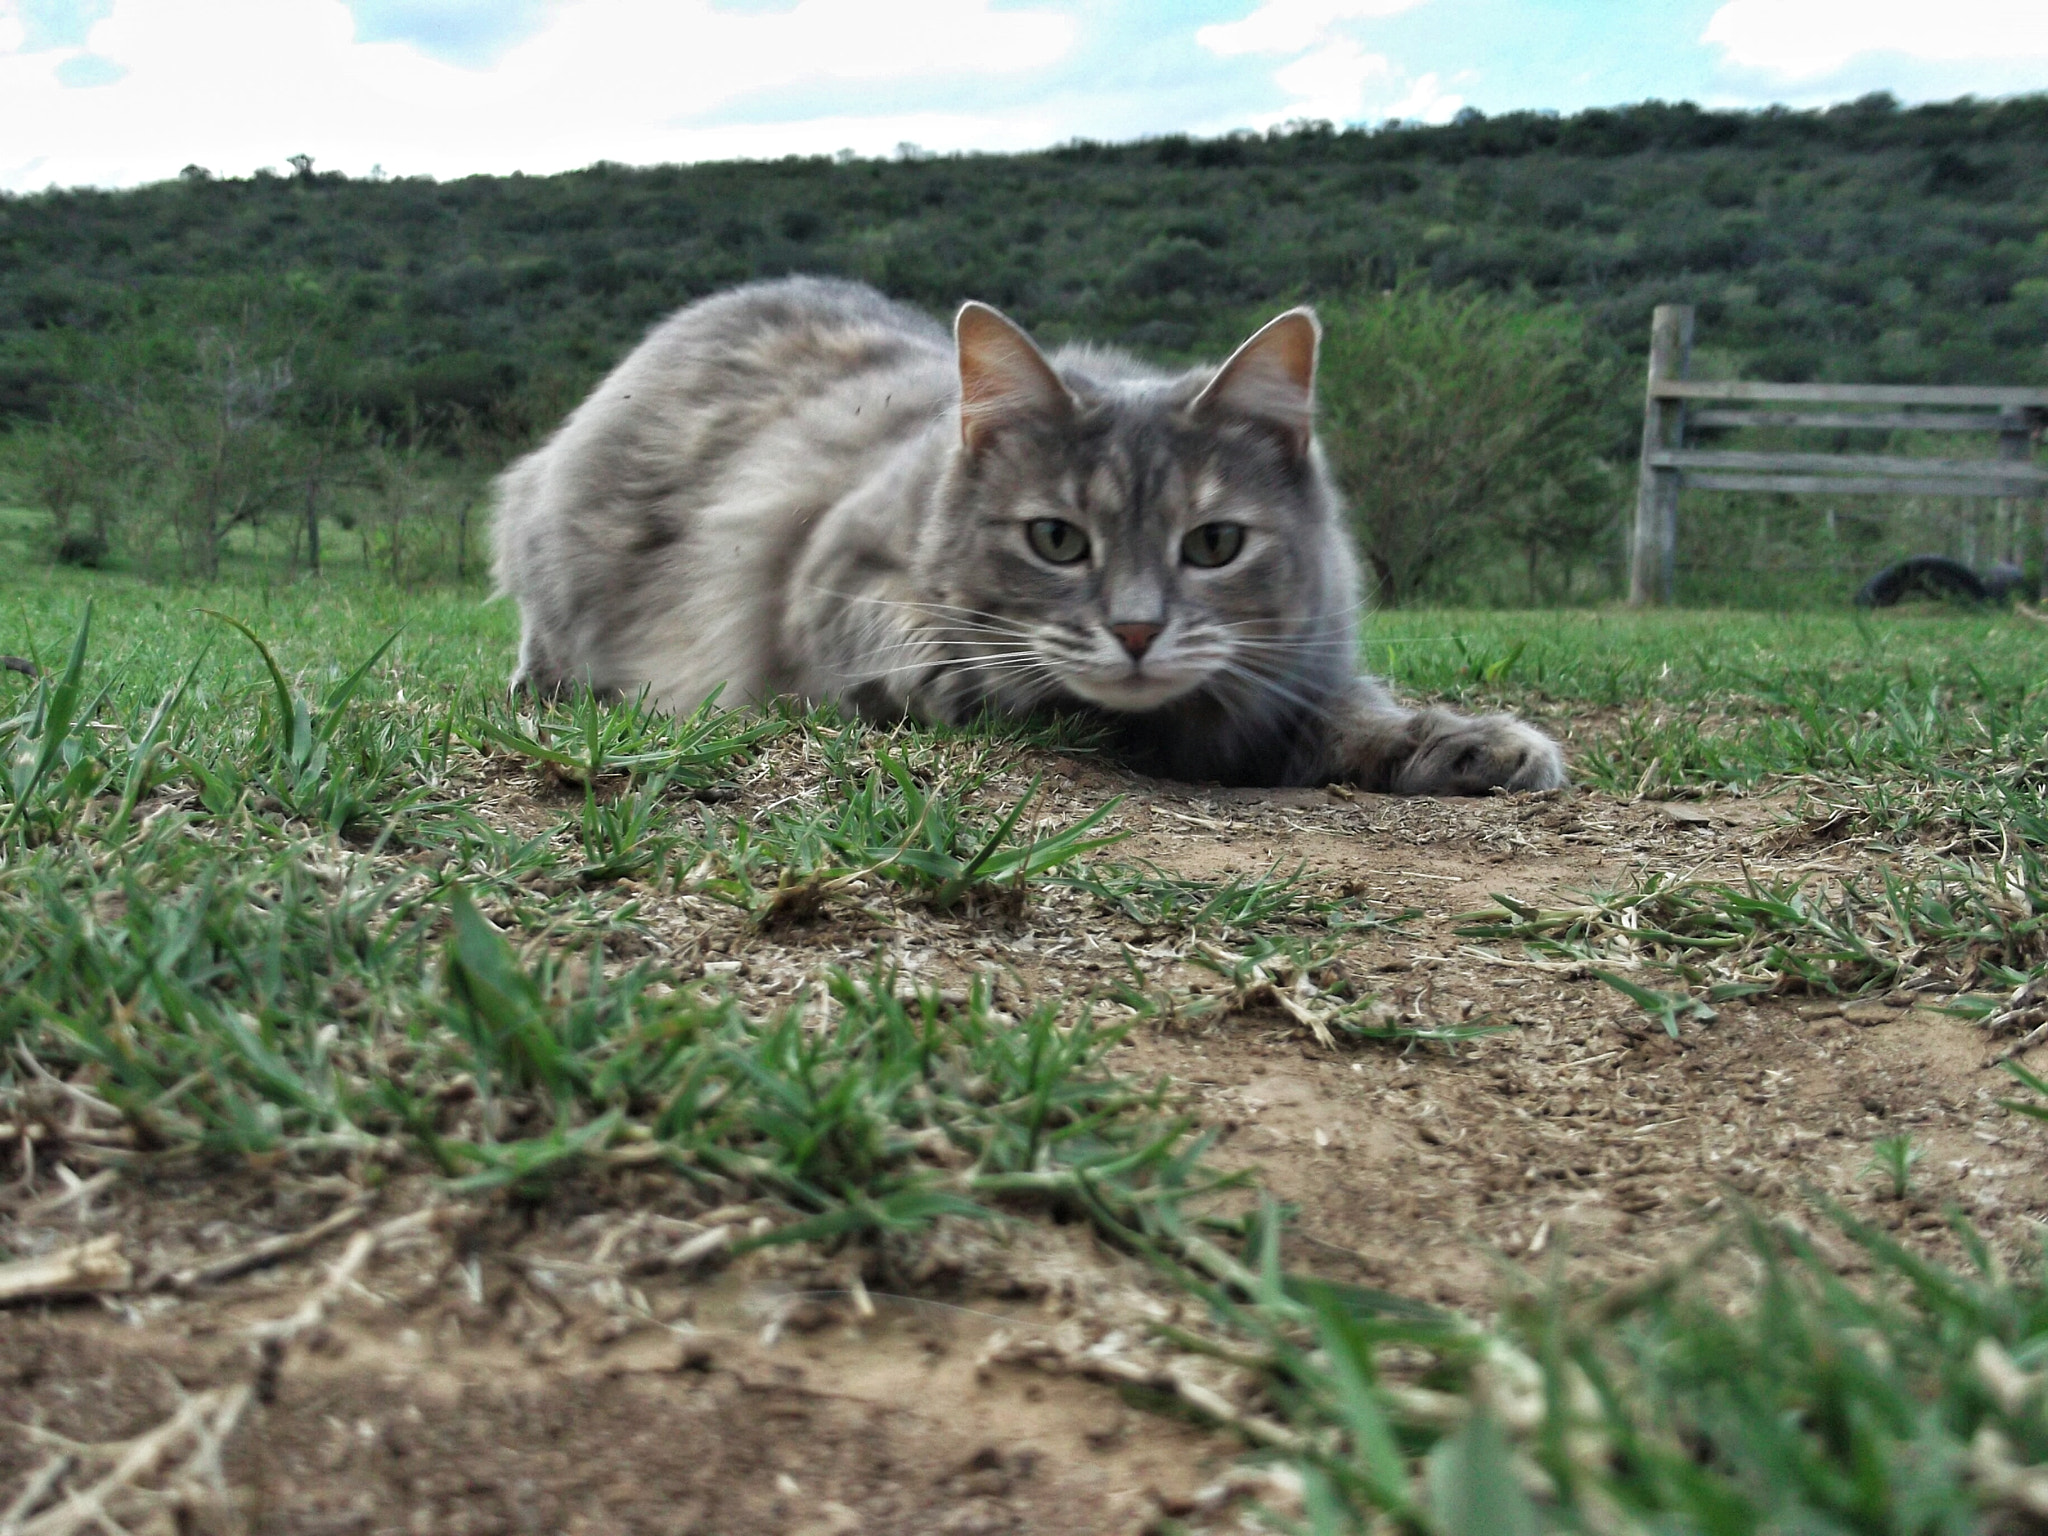 Fujifilm FinePix L30 sample photo. A grey cat in a field photography